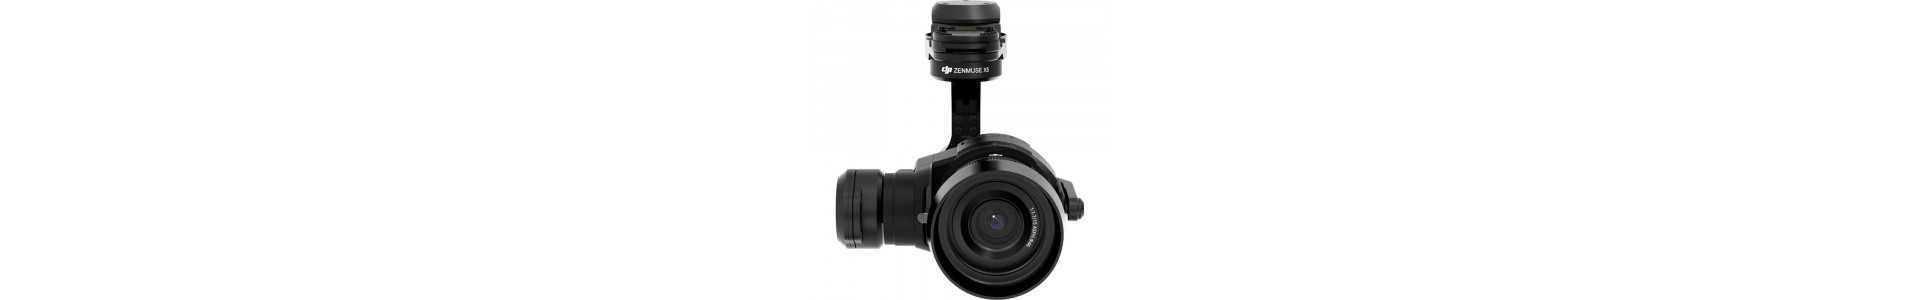 Gimbal Camera per Droni, stabilizzatori per videocamere Action Cam e Telefoni palmari